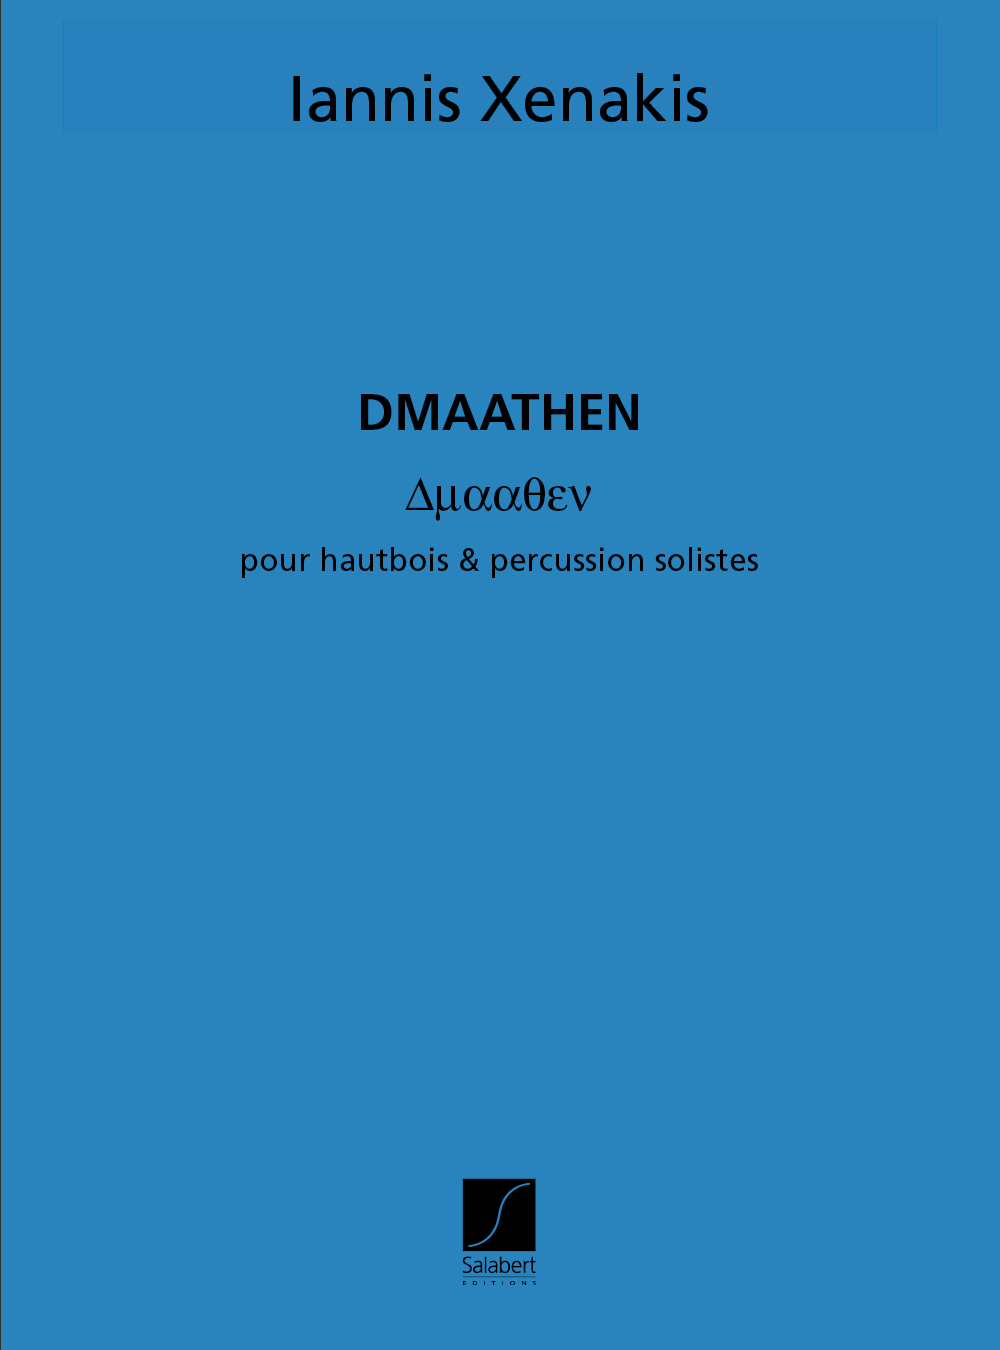 Iannis Xenakis: Dmaathen Hautbois Et Percussion Materiel: Oboe